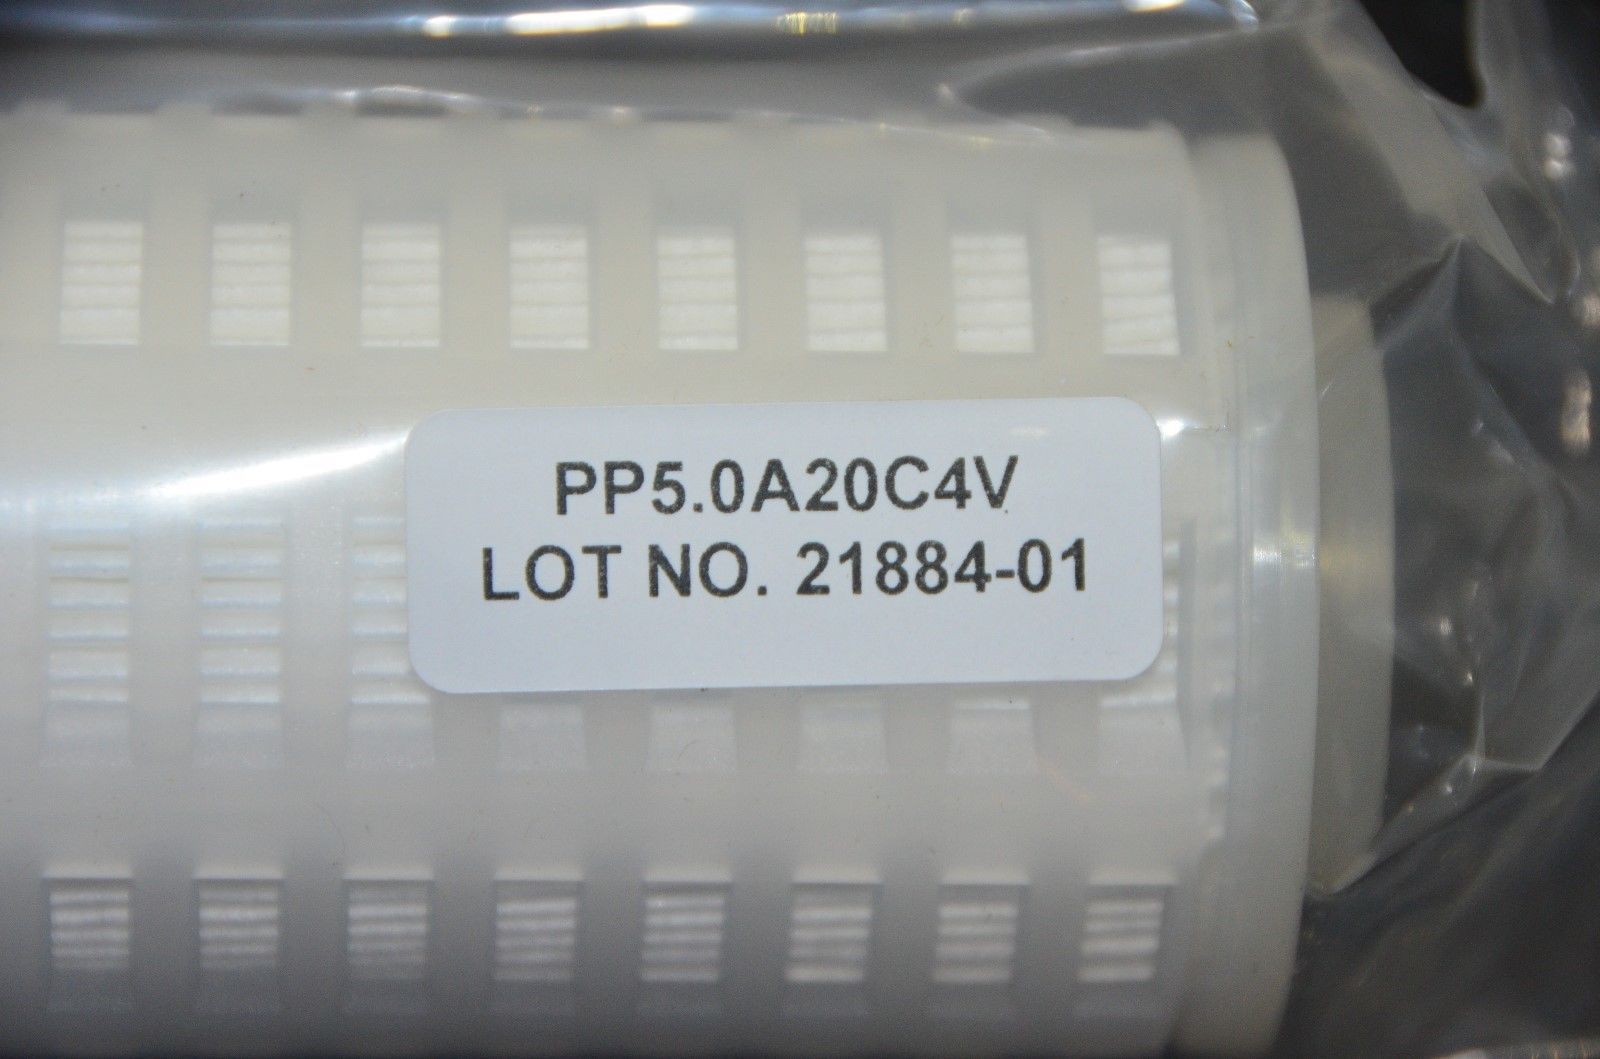 labtechsales US Filter FCVP710S2 0.2um Hydrophobic Filter 